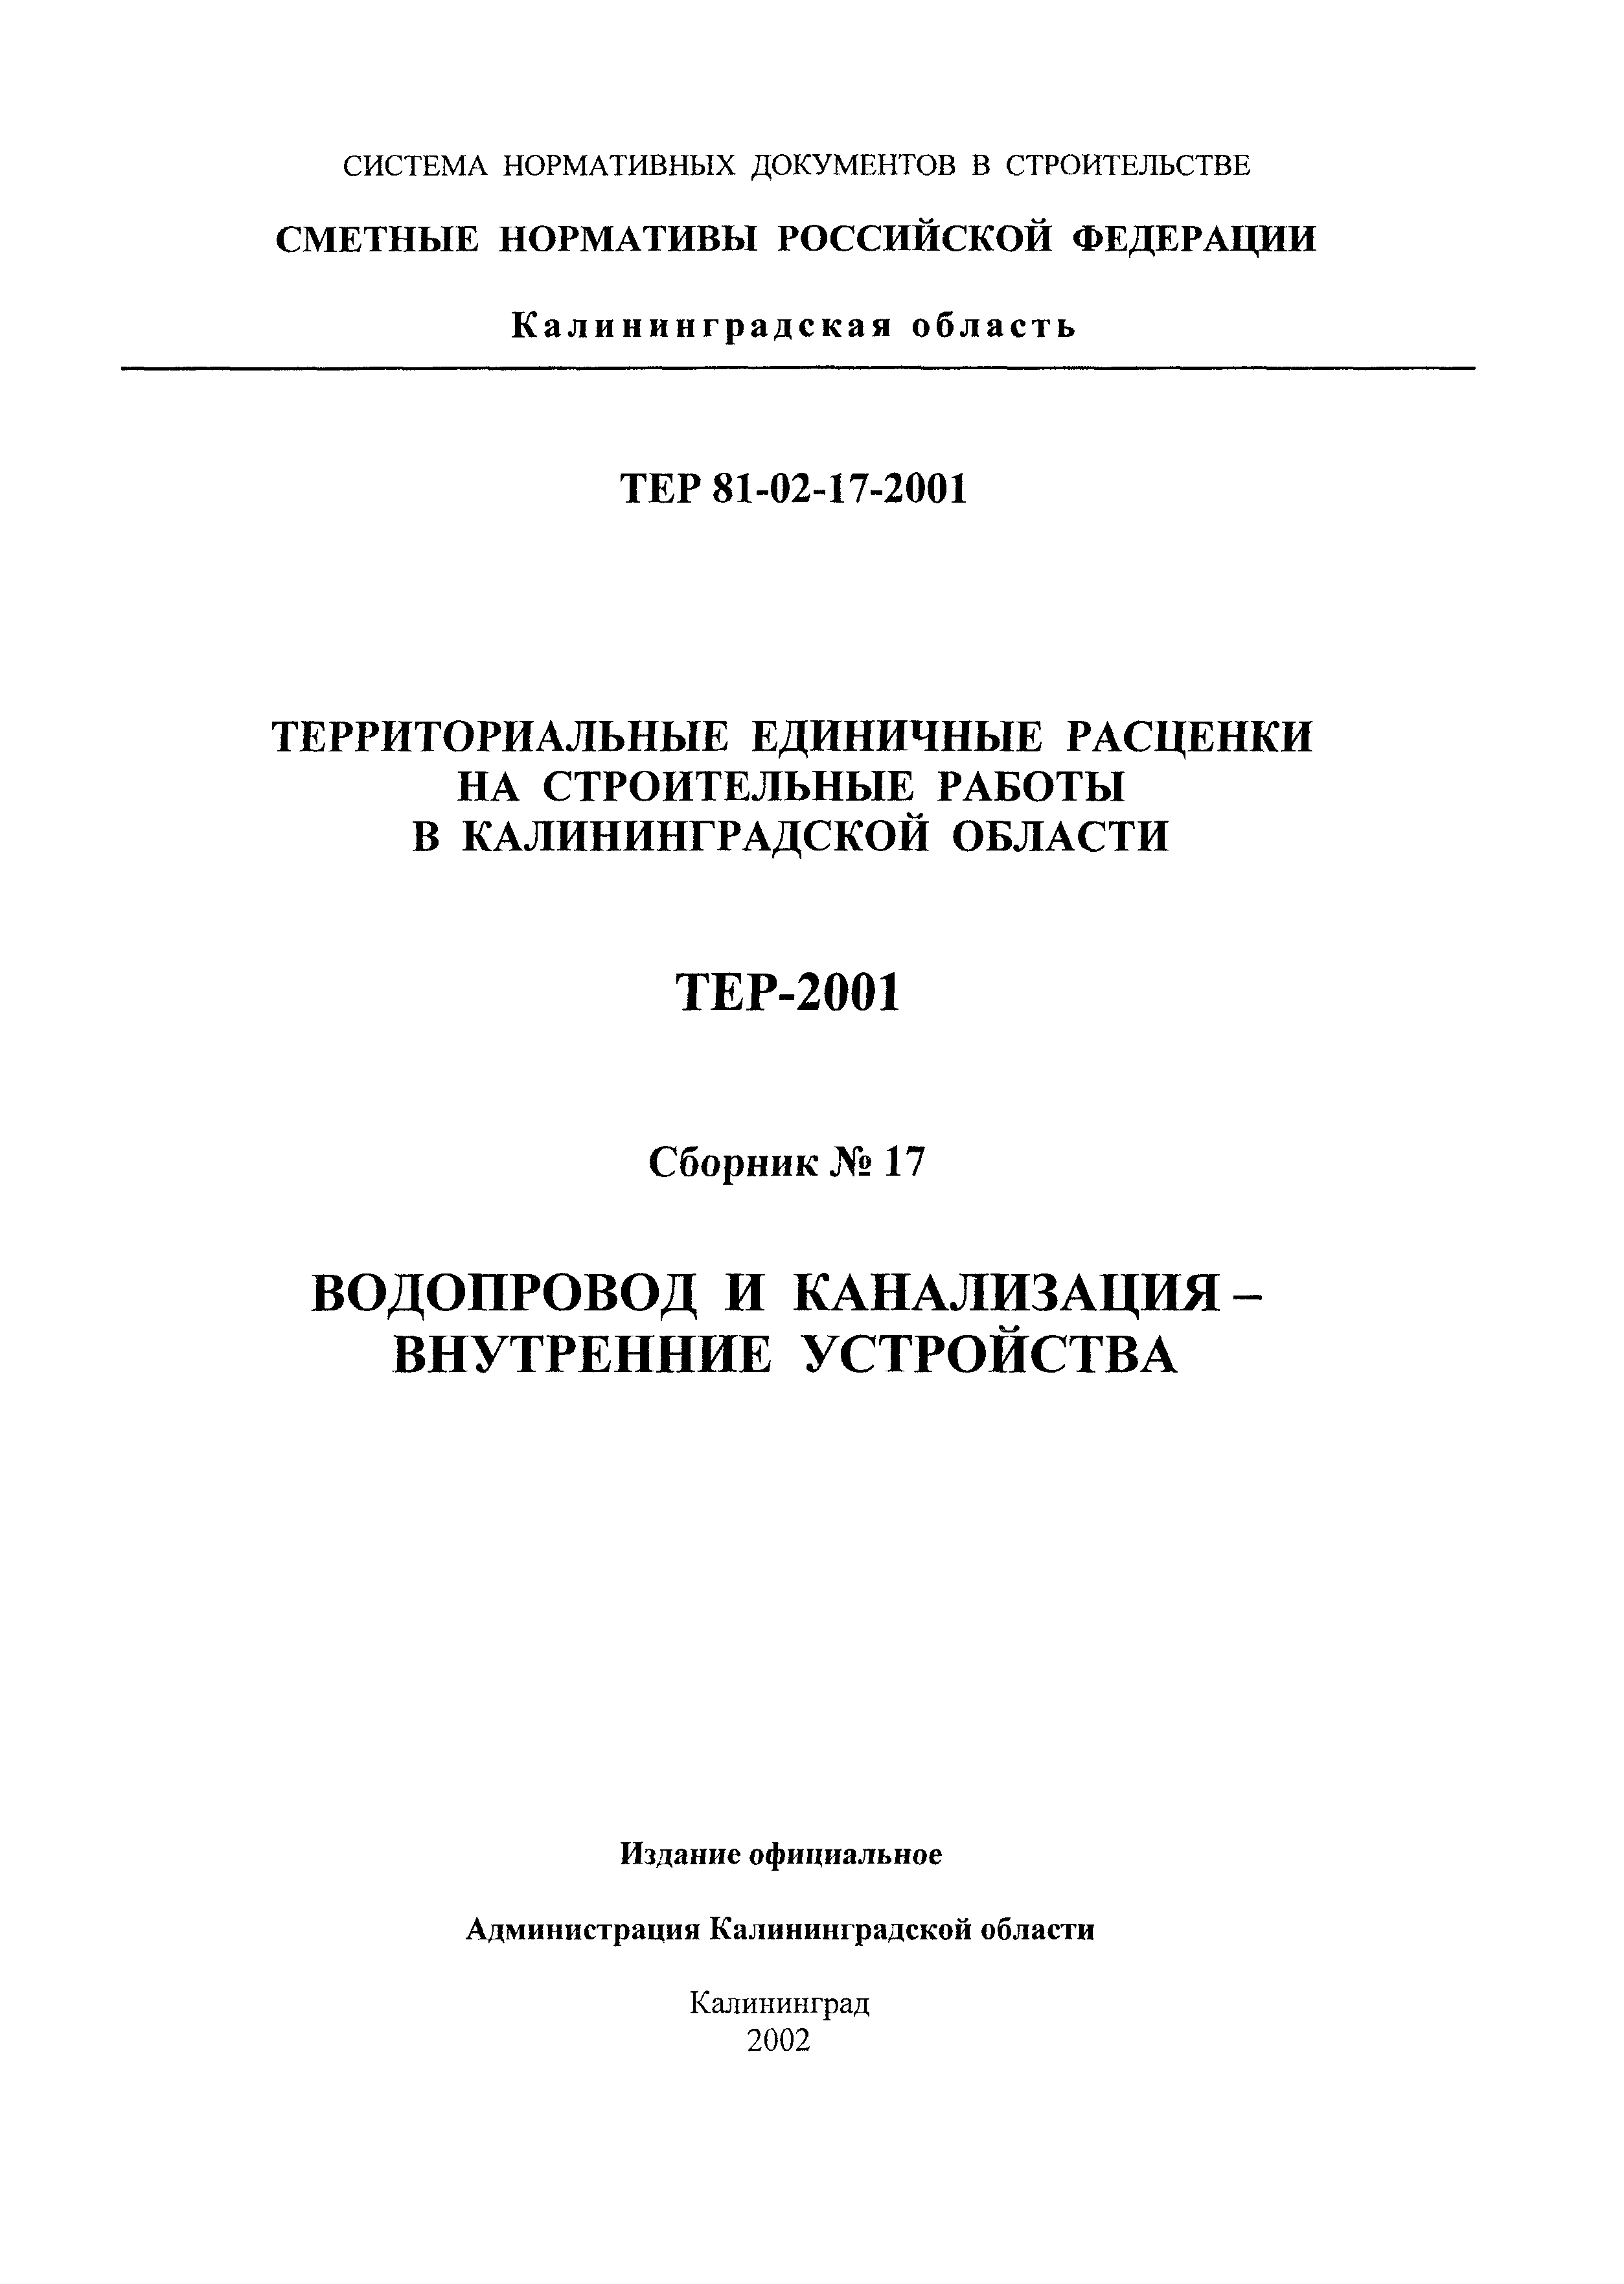 ТЕР Калининградская область 2001-17